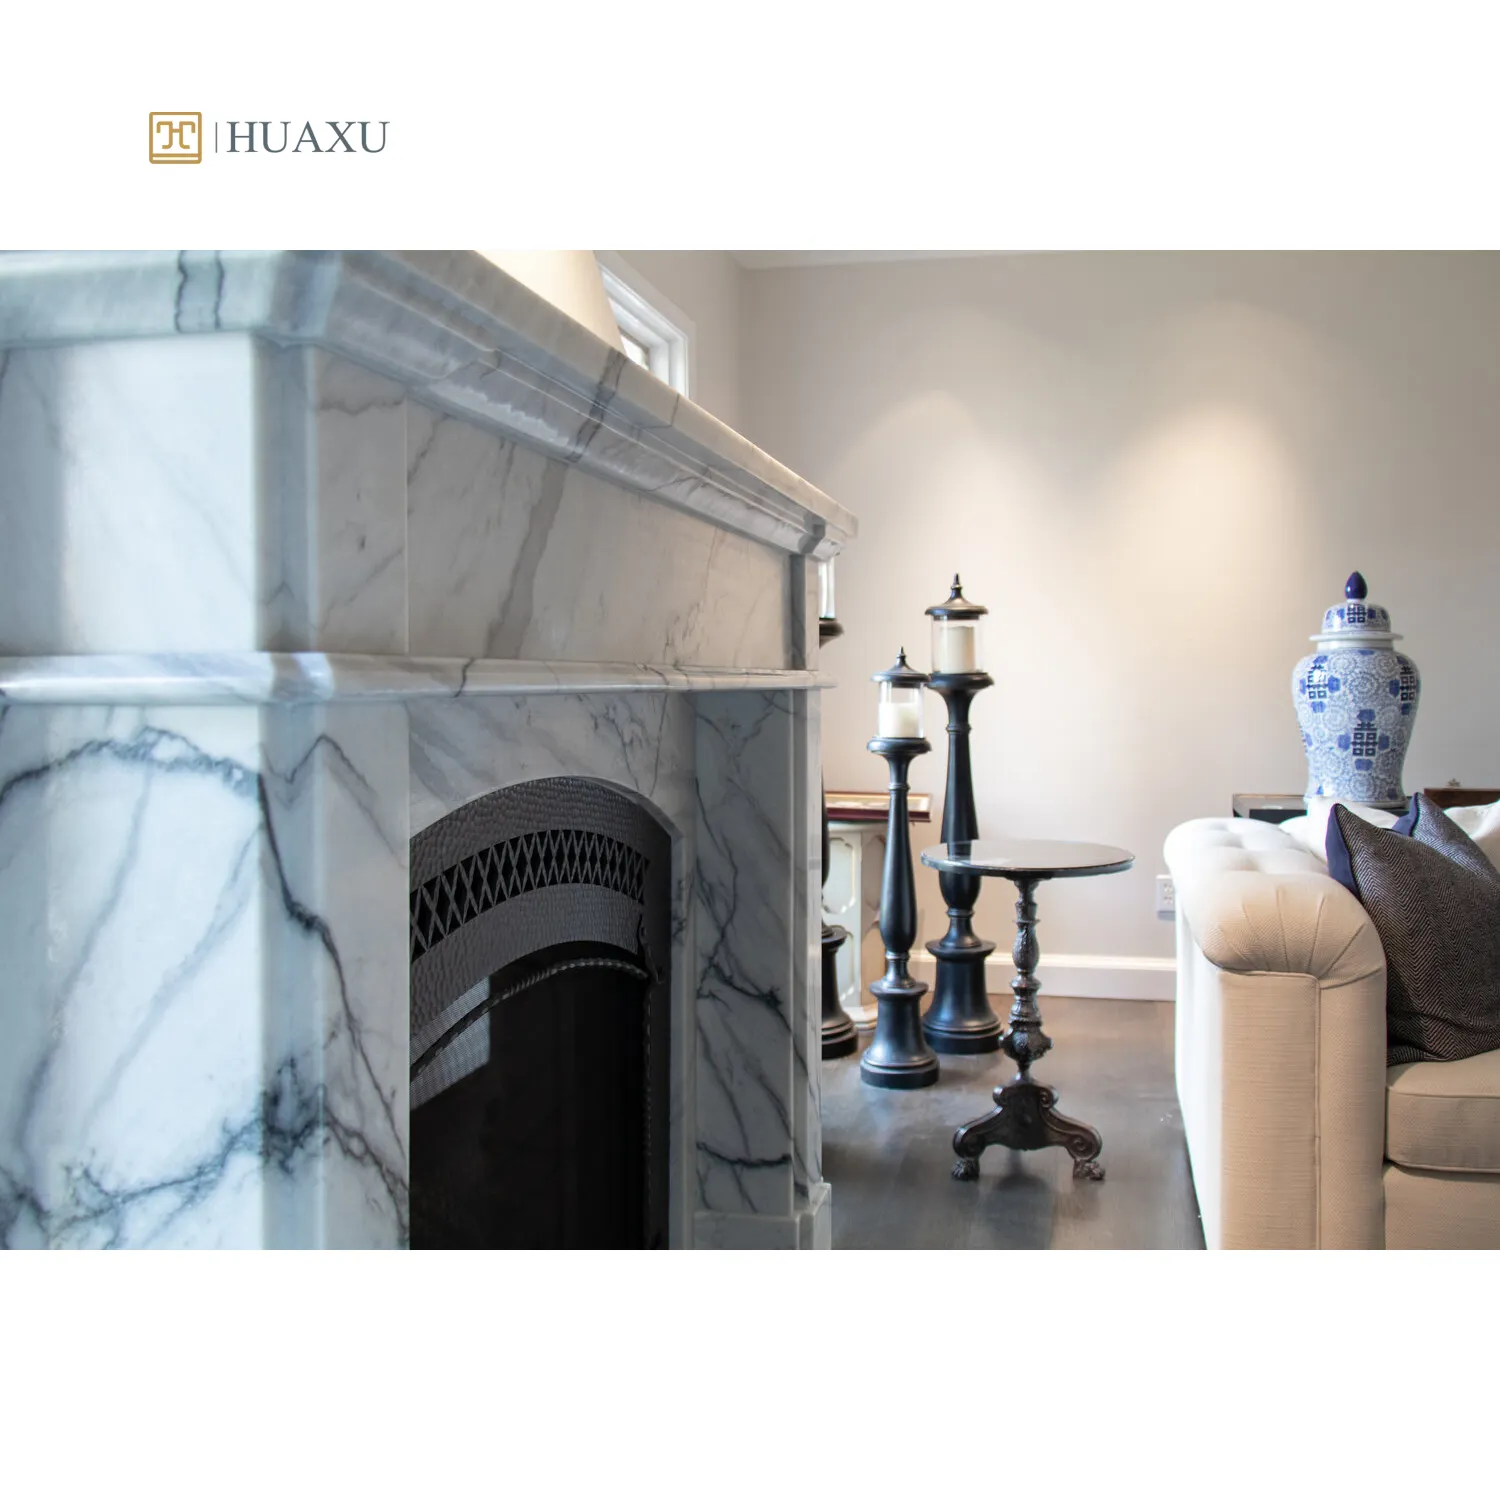 Huaxu tamaño personalizado vena mármol gris piedra decoración del hogar Carrara blanco astilla niebla mármol chimenea